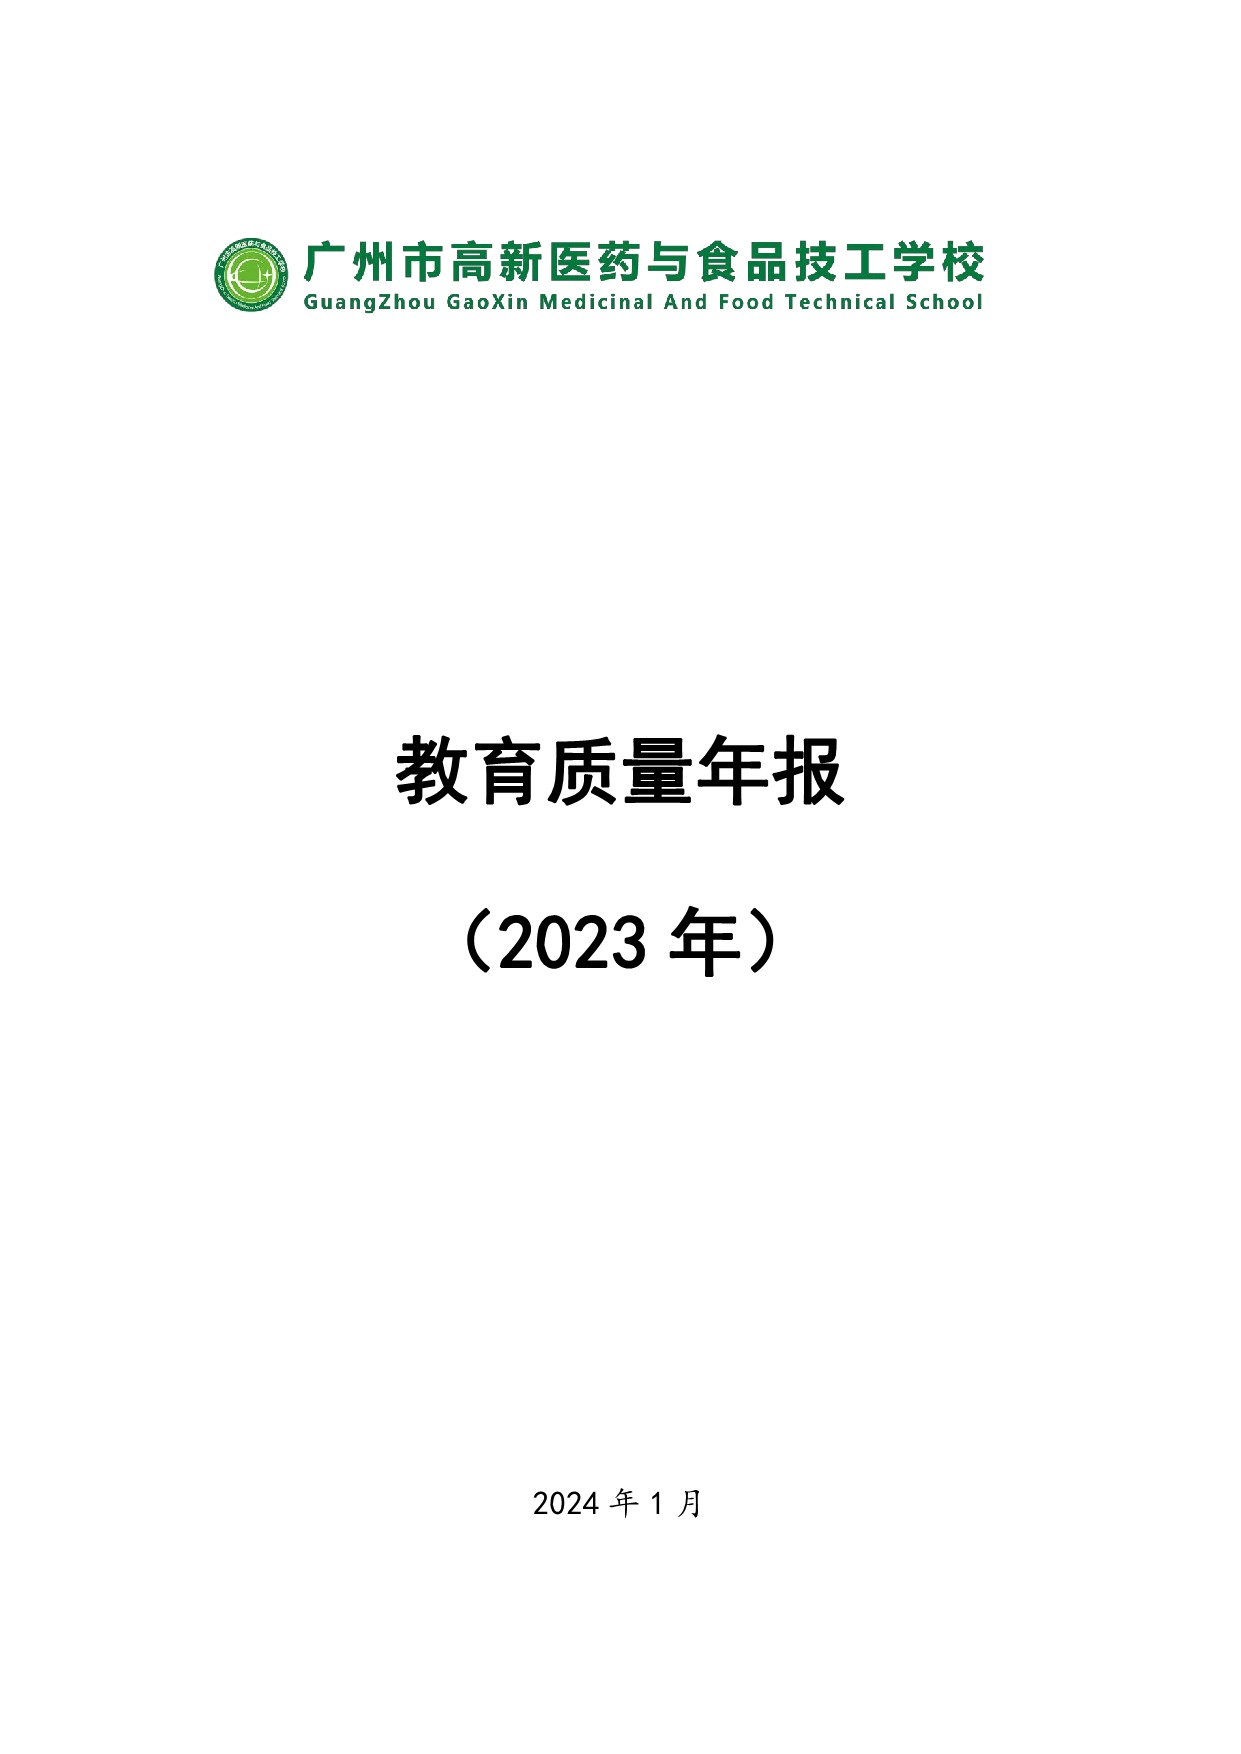 广州市高新医药与食品技工学校质量年报（2023）_1